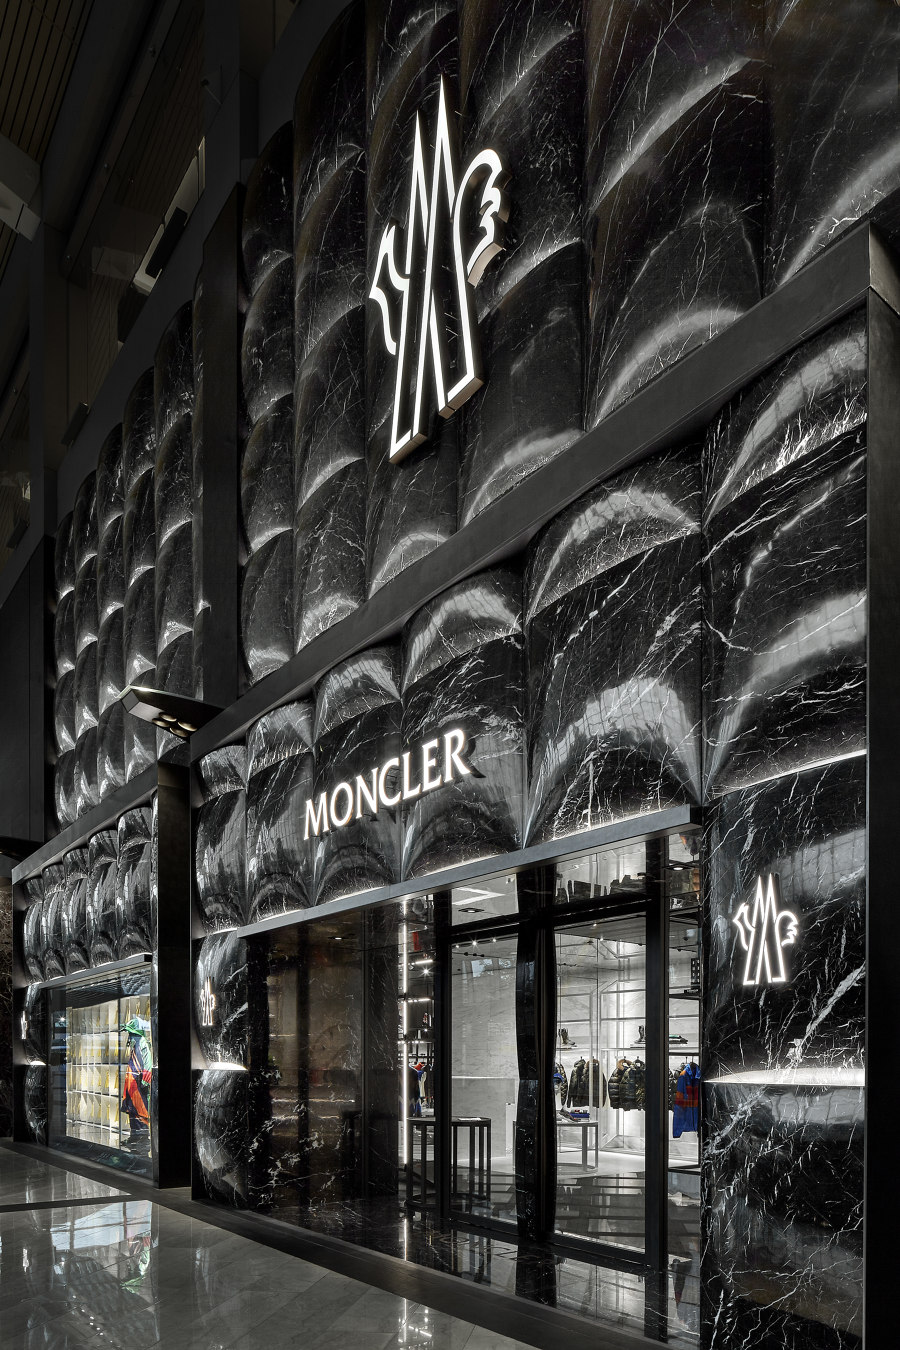 Moncler Singapore by CURIOSITY | Shop interiors